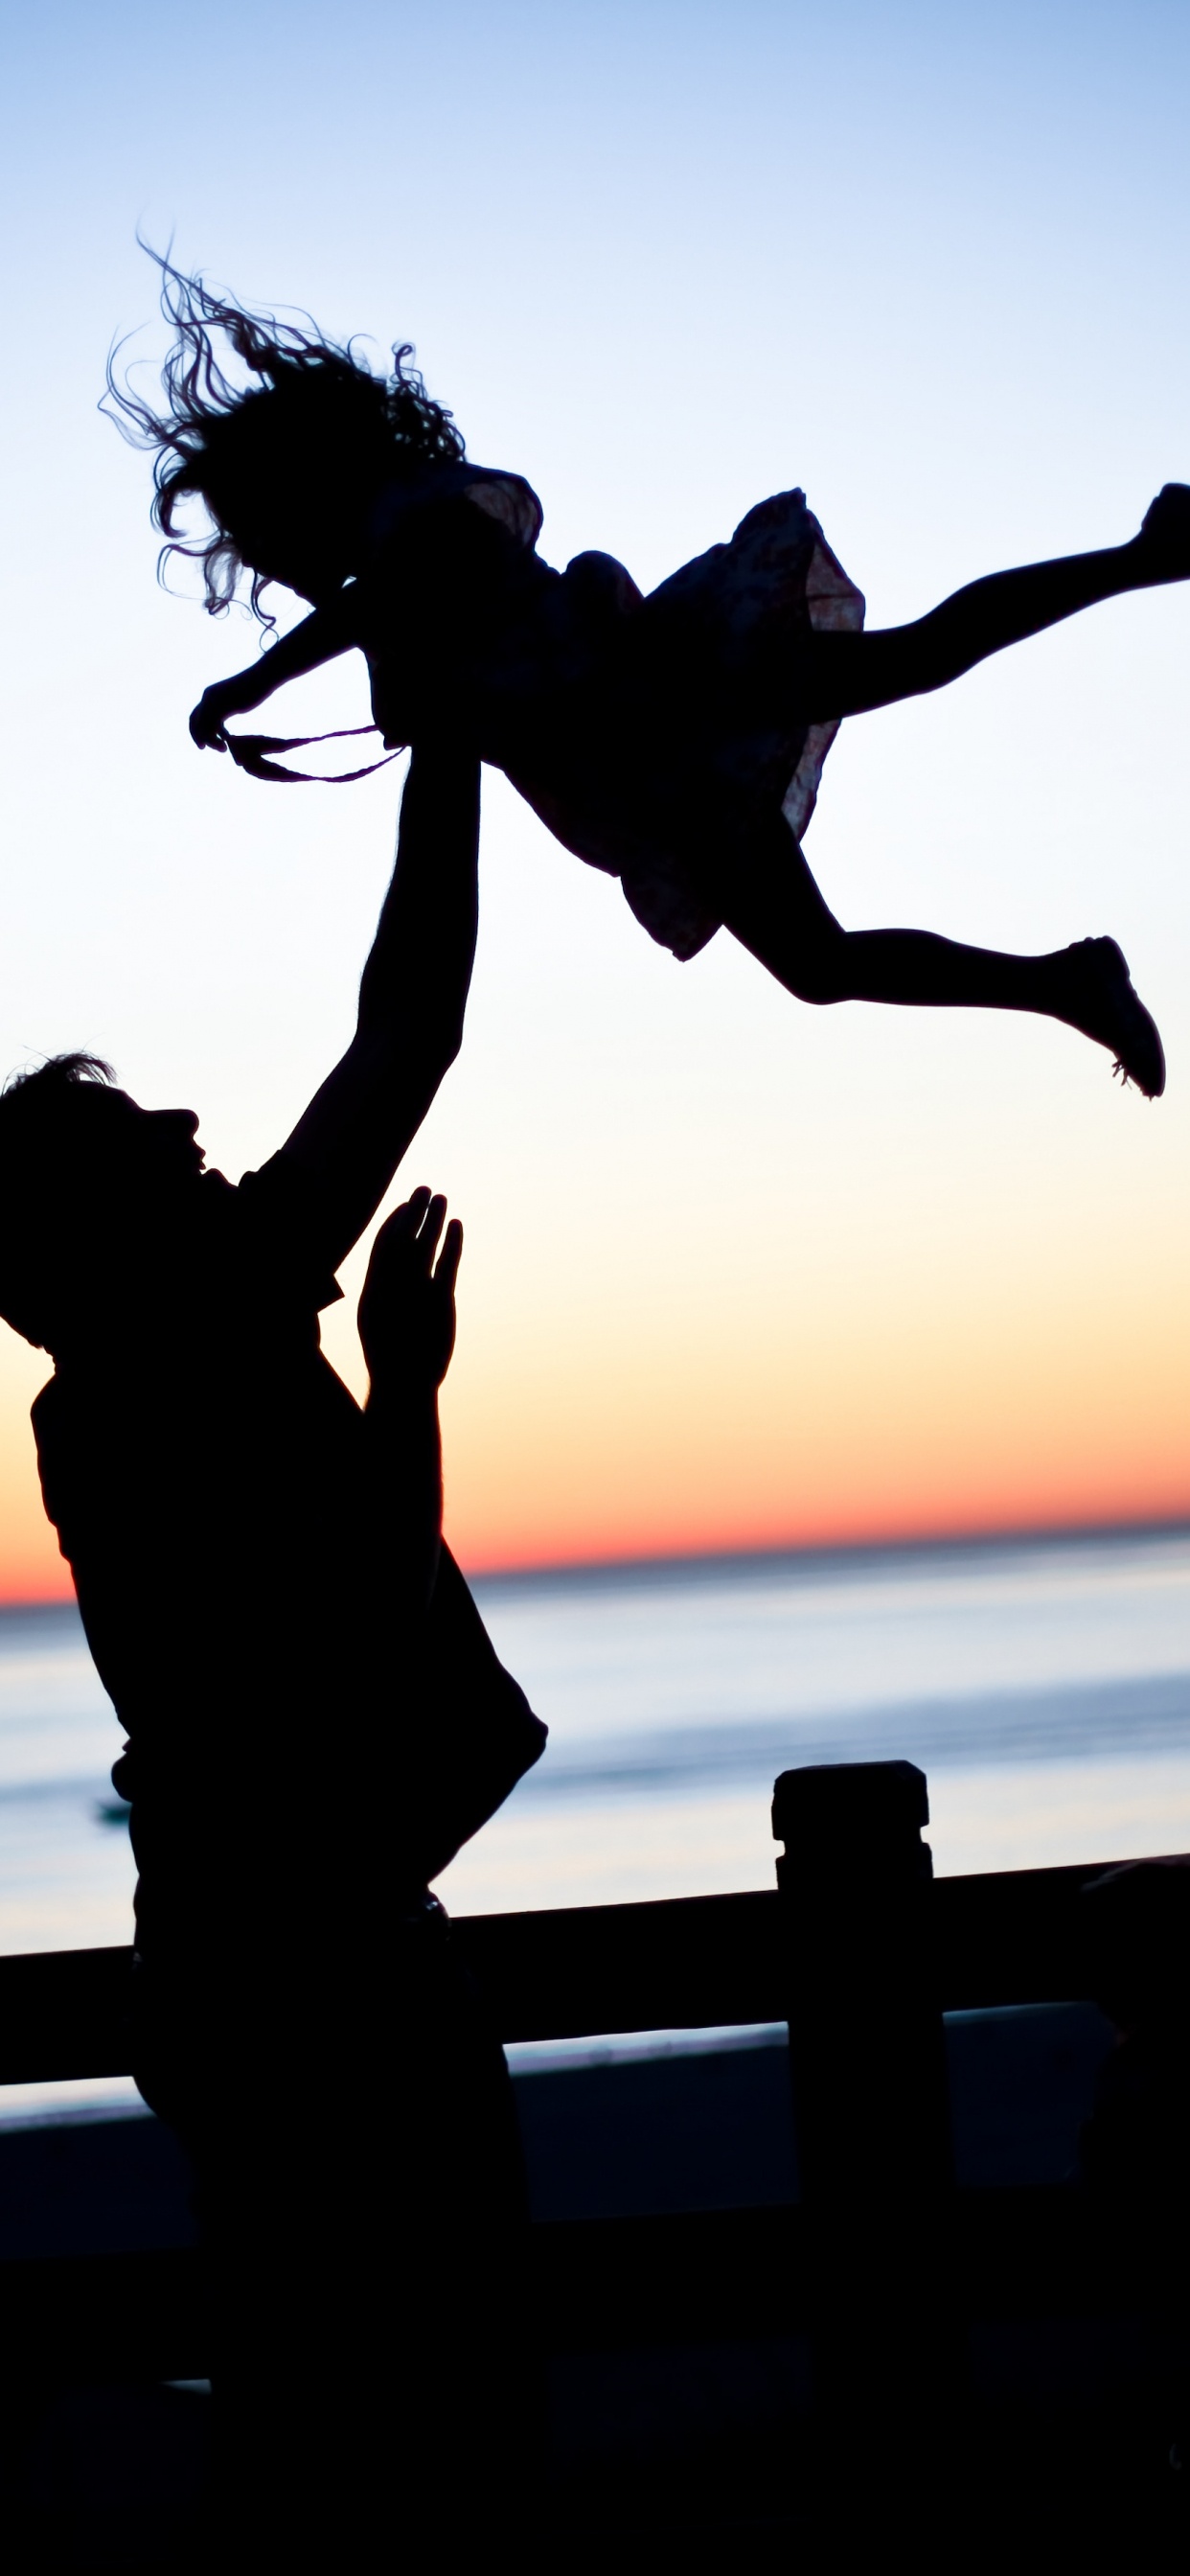 爸爸, 女儿, 家庭, 人们在自然界, 跳跃 壁纸 1242x2688 允许